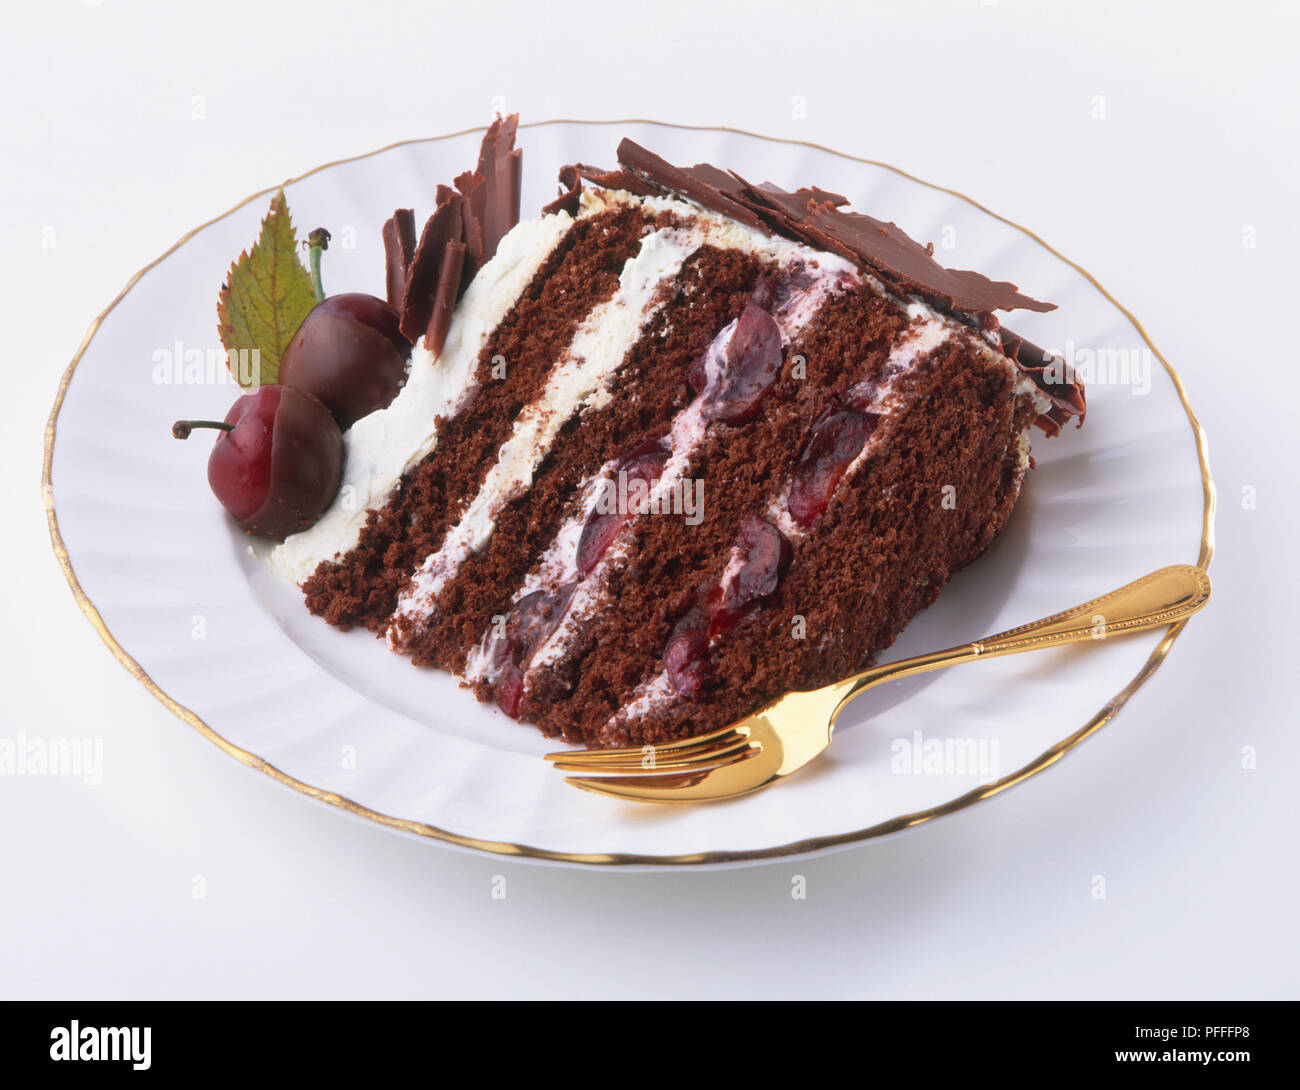 Porzione di Foresta Nera, torte a strati farcita con crema e decorate con cioccolato, ciliegie e crema. Foto Stock